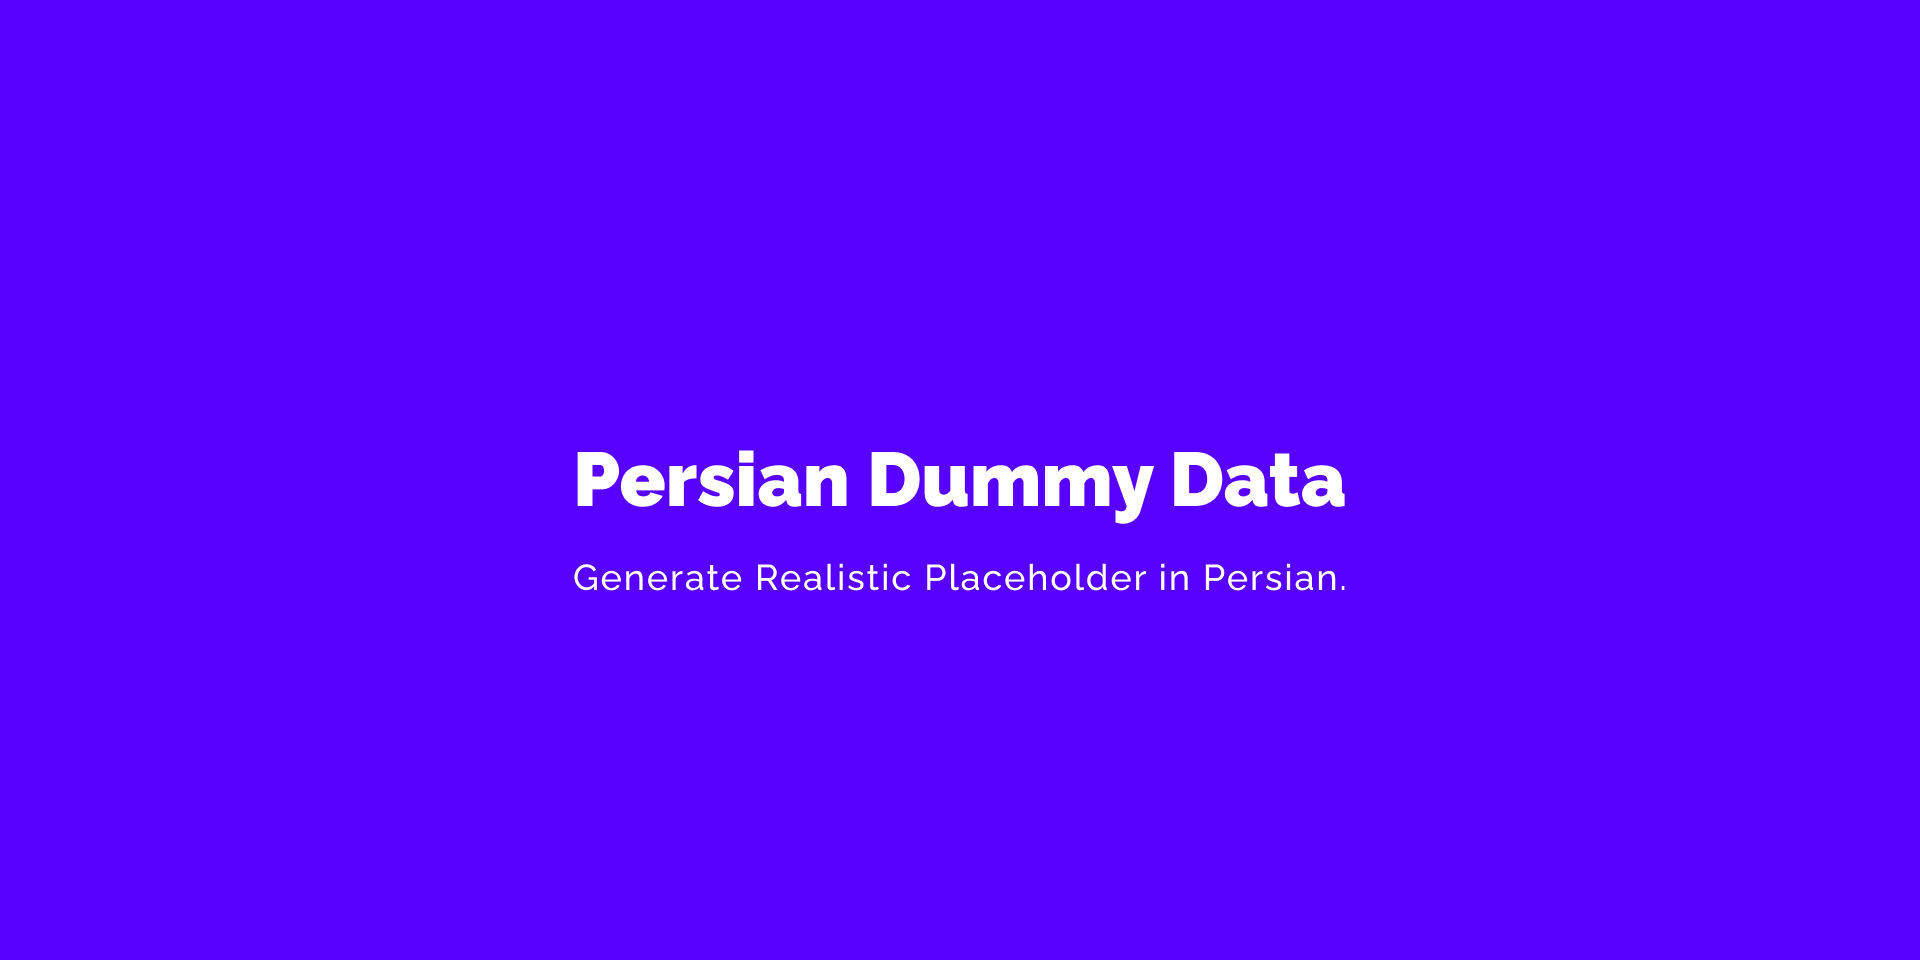 установить плагин для Фигмы Persian Dummy Data